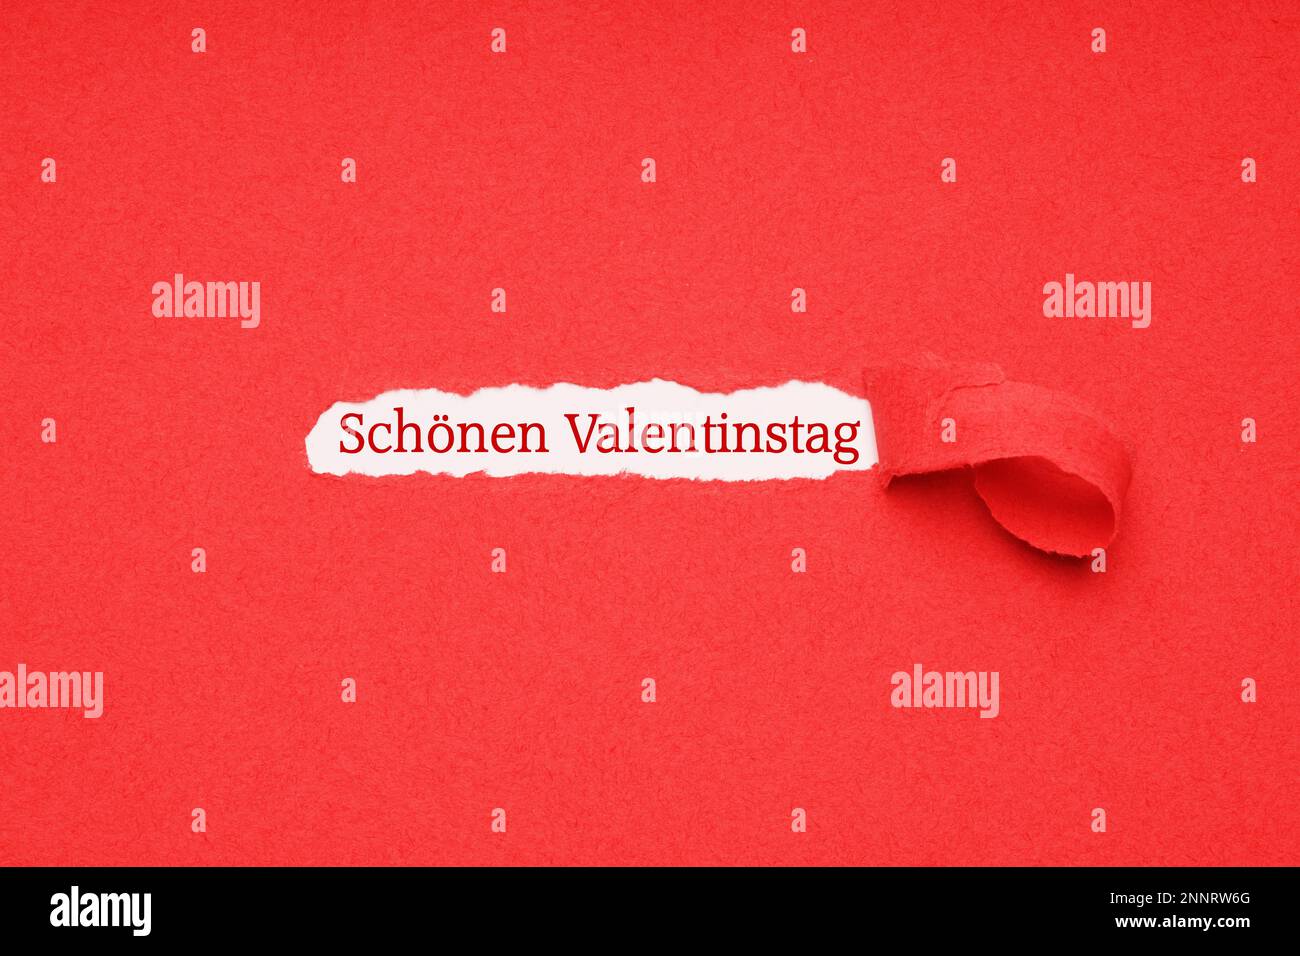 Schonen valentinstag significa felice il giorno di San Valentino in tedesco - messaggio nascosto visto attraverso il foro strappata in rosso sfondo della carta Foto Stock